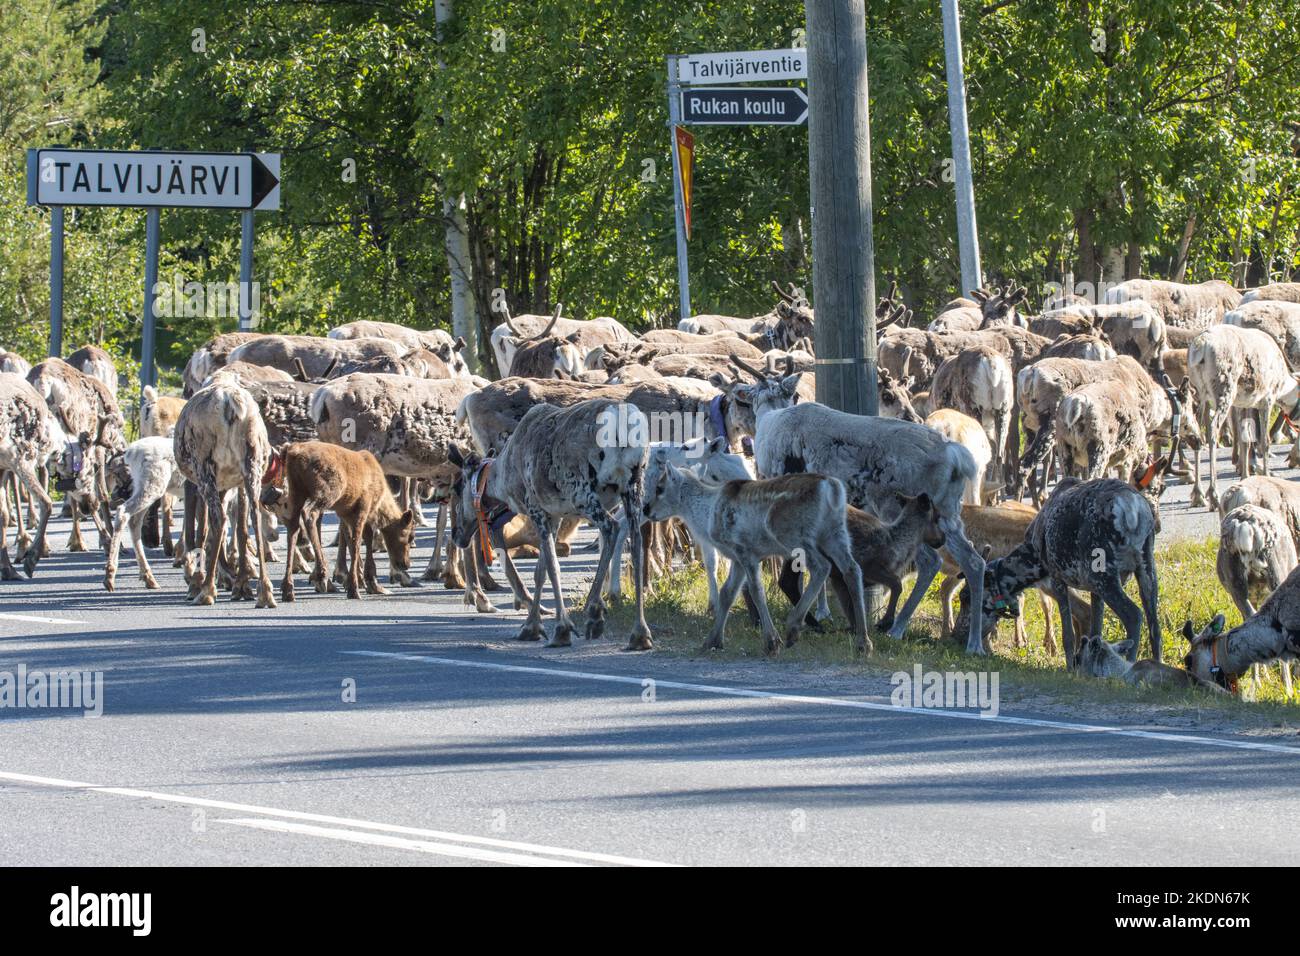 Una grande mandria di renne addomesticate che si aggirano su una strada asfaltata nel villaggio di Ruka, nel nord della Finlandia. Foto Stock